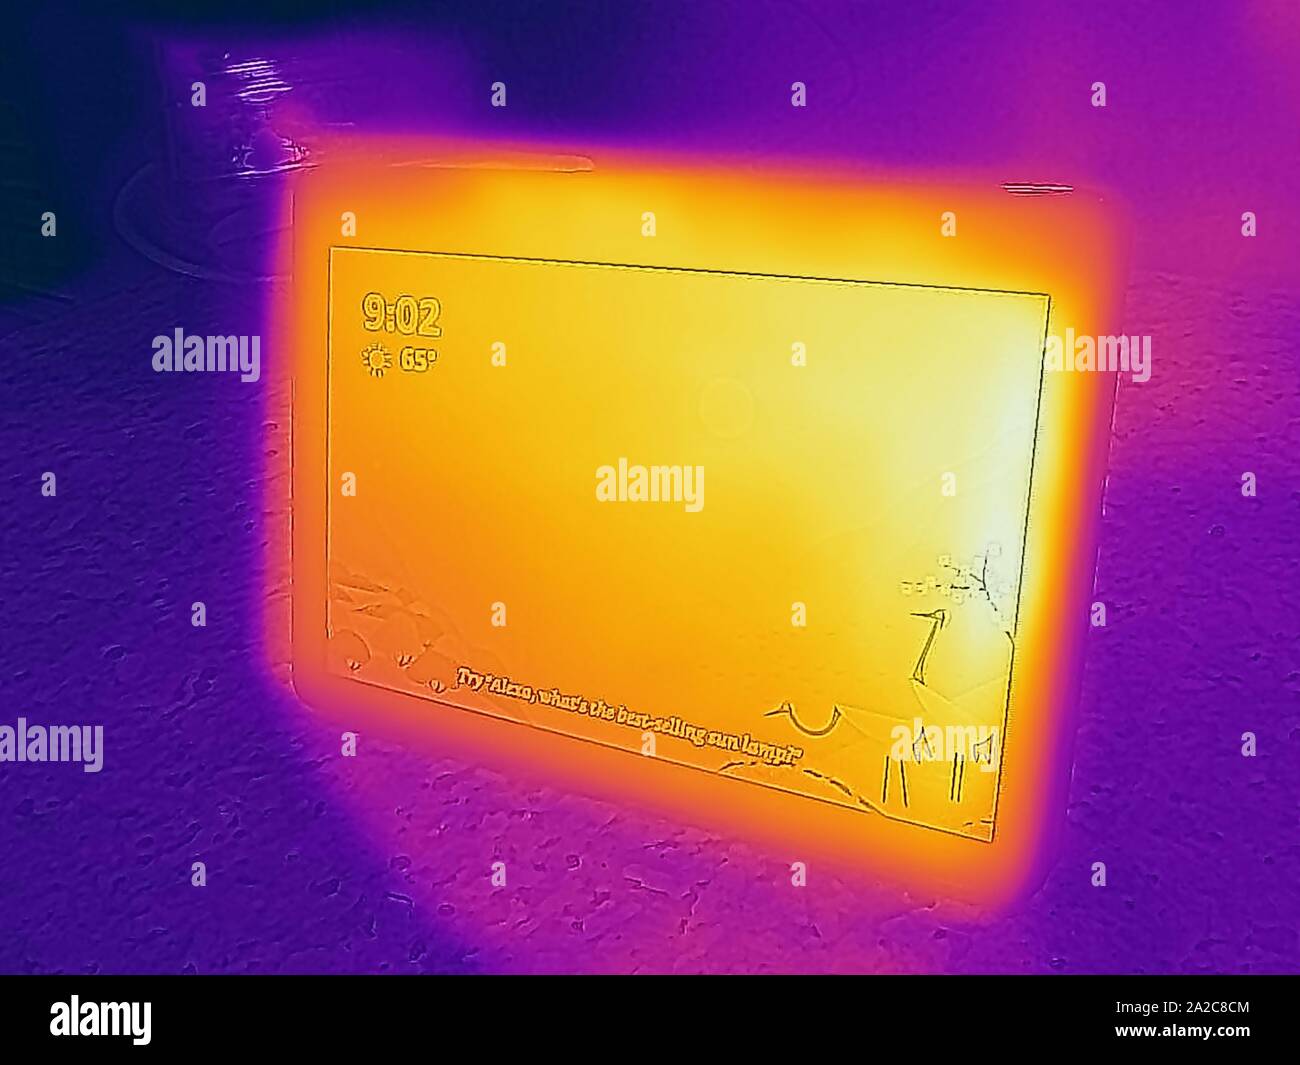 Wärmebild der Wärmebildkamera mit Lichtbereichen, die höheren Temperaturen entsprechen und die Abwärme des Smart Speaker von Amazon Echo Show, San Ramon, Kalifornien, 2. September 2019 zeigen. () Stockfoto